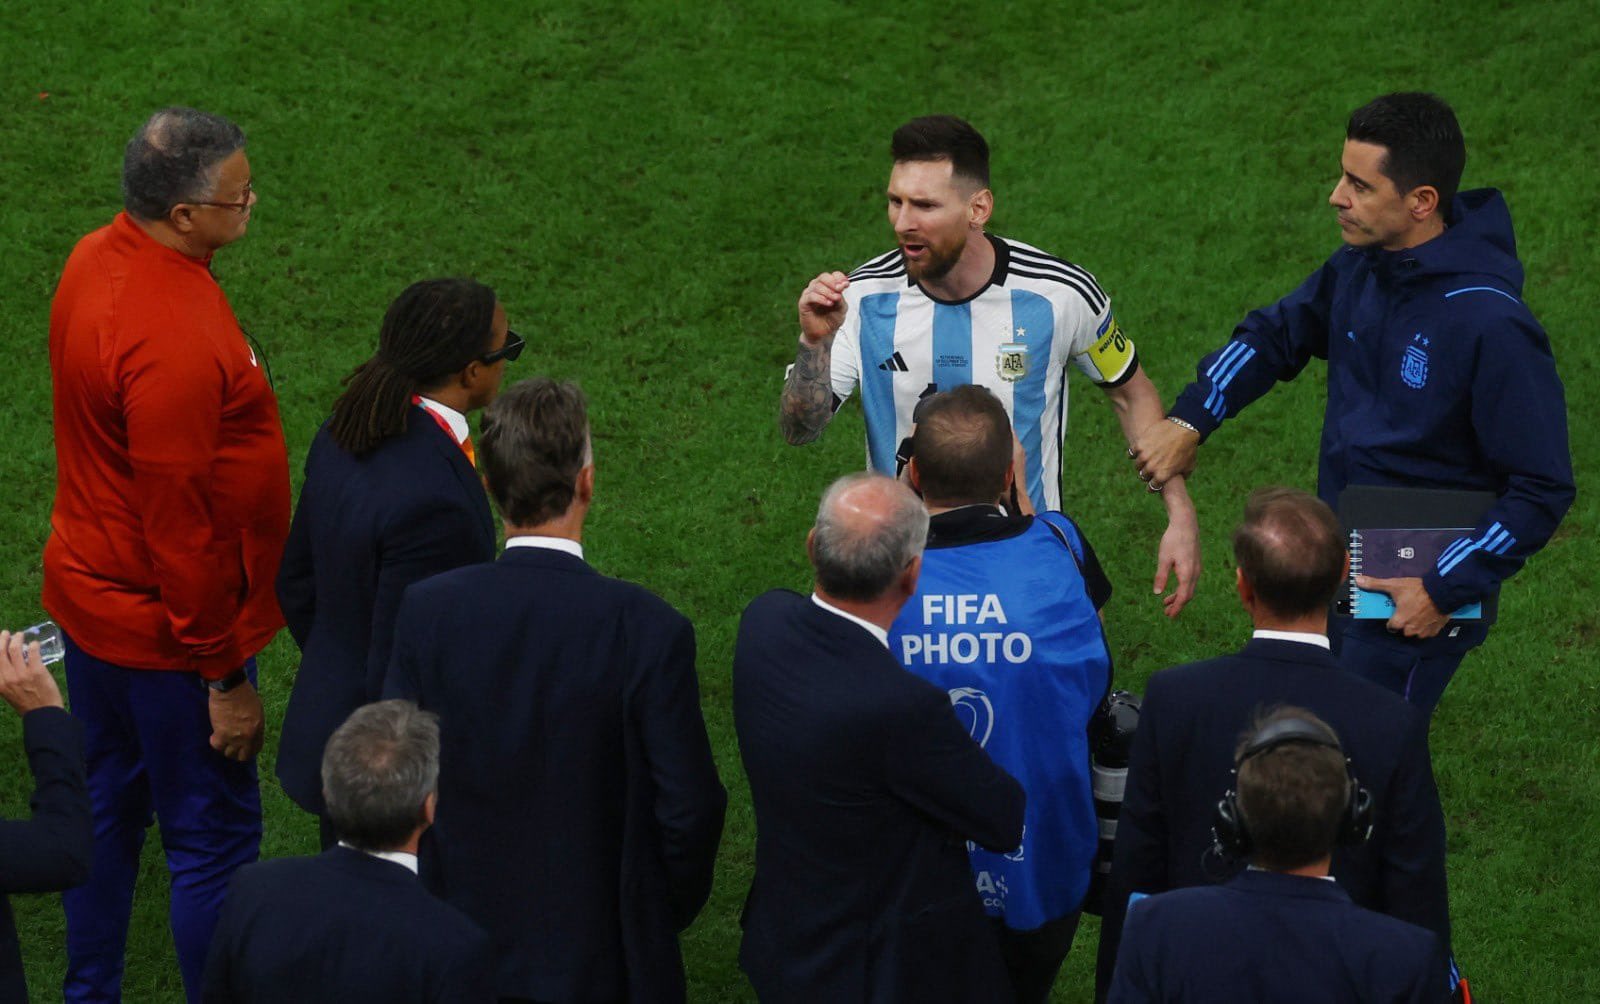 Hãy xem HLV Van Gaal giải thích việc đối đầu với Messi và đội tuyển Argentina trong trận đấu nảy lửa này. Đừng bỏ lỡ cơ hội hiểu rõ tâm lý của nhà cầm quân tài ba này trong trận thi đấu tại ảnh hiếm hoi này!